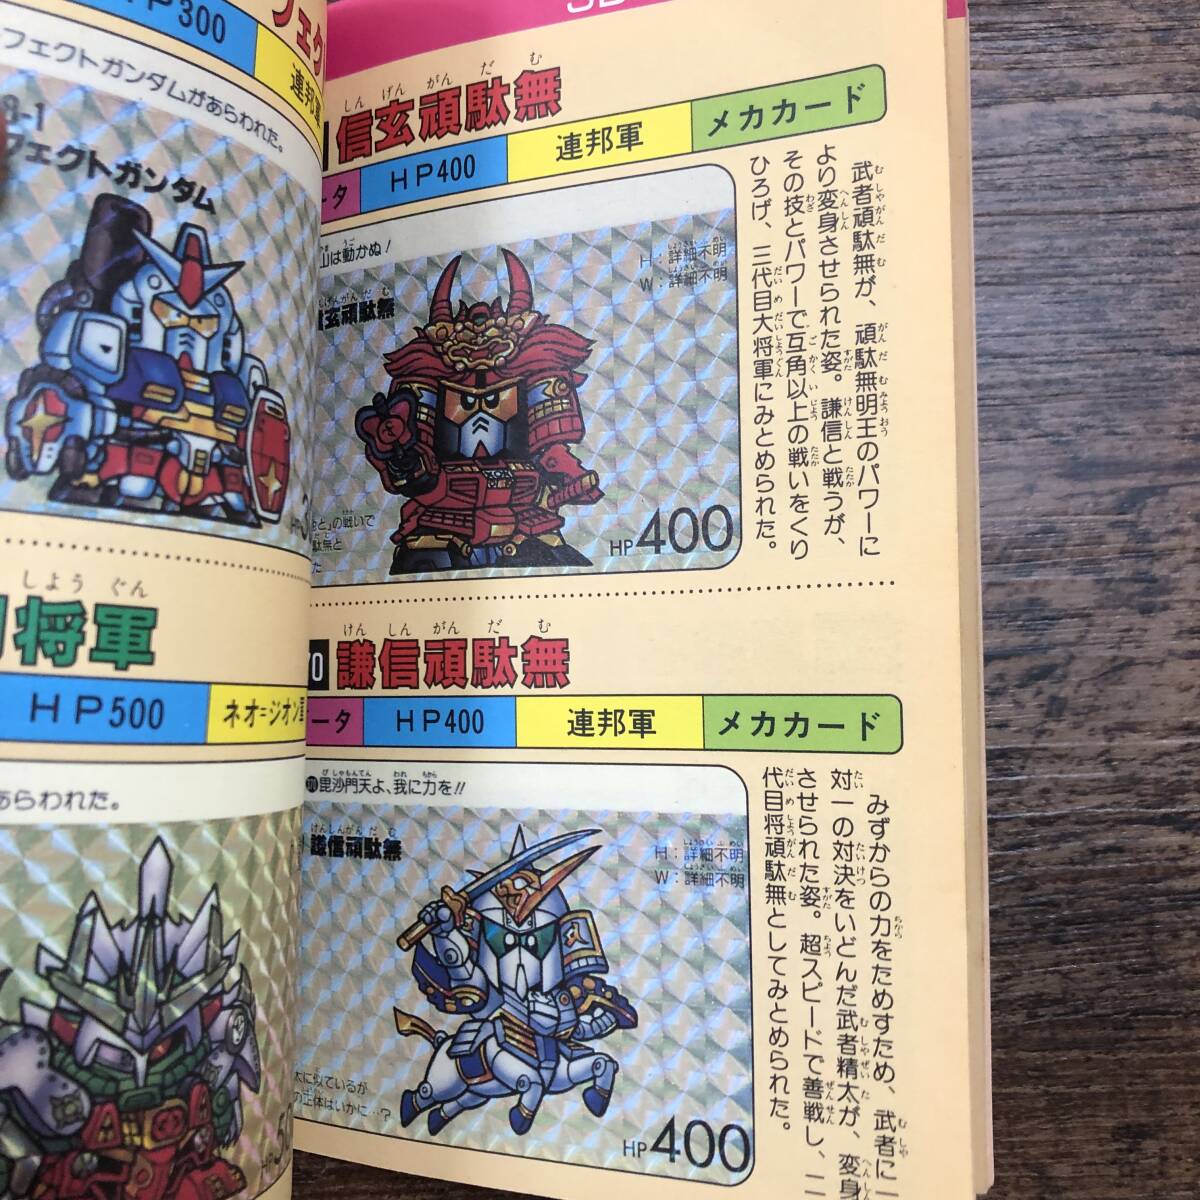 K-2492# решение версия Carddas 20SD Gundam PART4# комикс бонбон специальный (59)#.. фирма #1990 год 11 месяц 27 день no. 1.